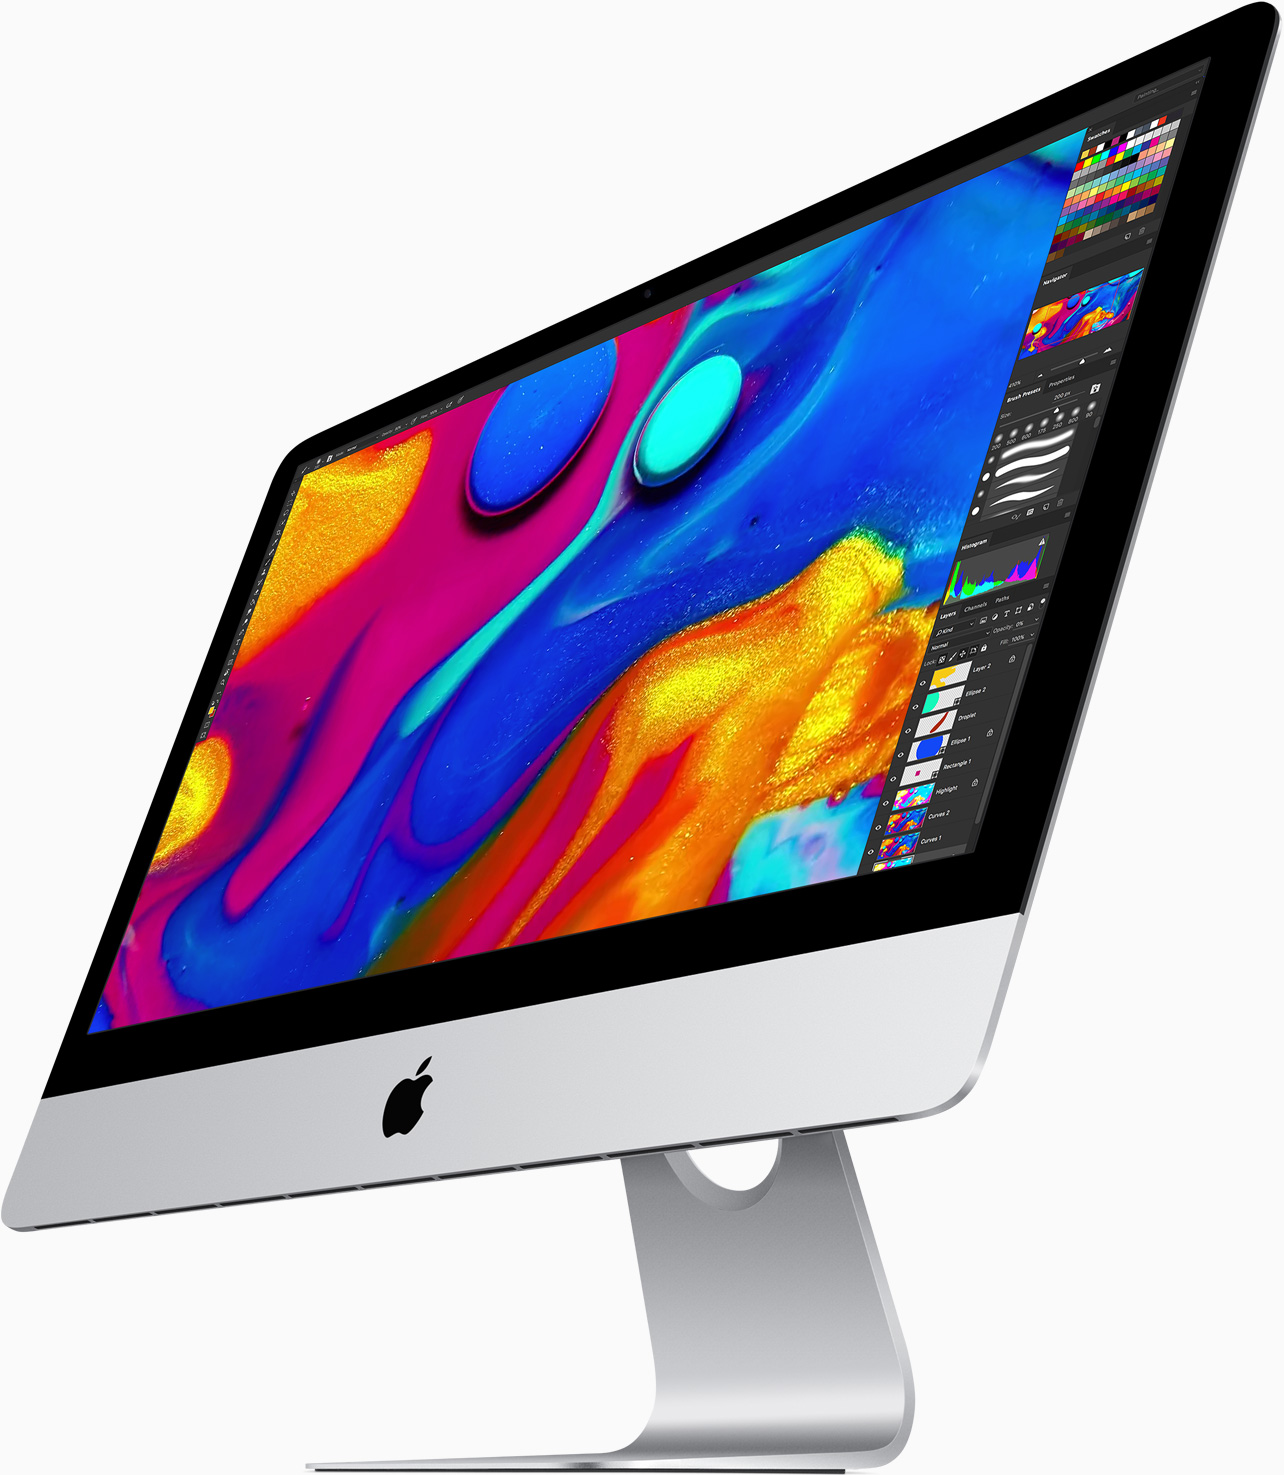 Immagine pubblicata in relazione al seguente contenuto: I Mac potrebbero utilizzare CPU progettate da Apple a partire dal 2020 | Nome immagine: news28092_Apple-iMac_1.jpg